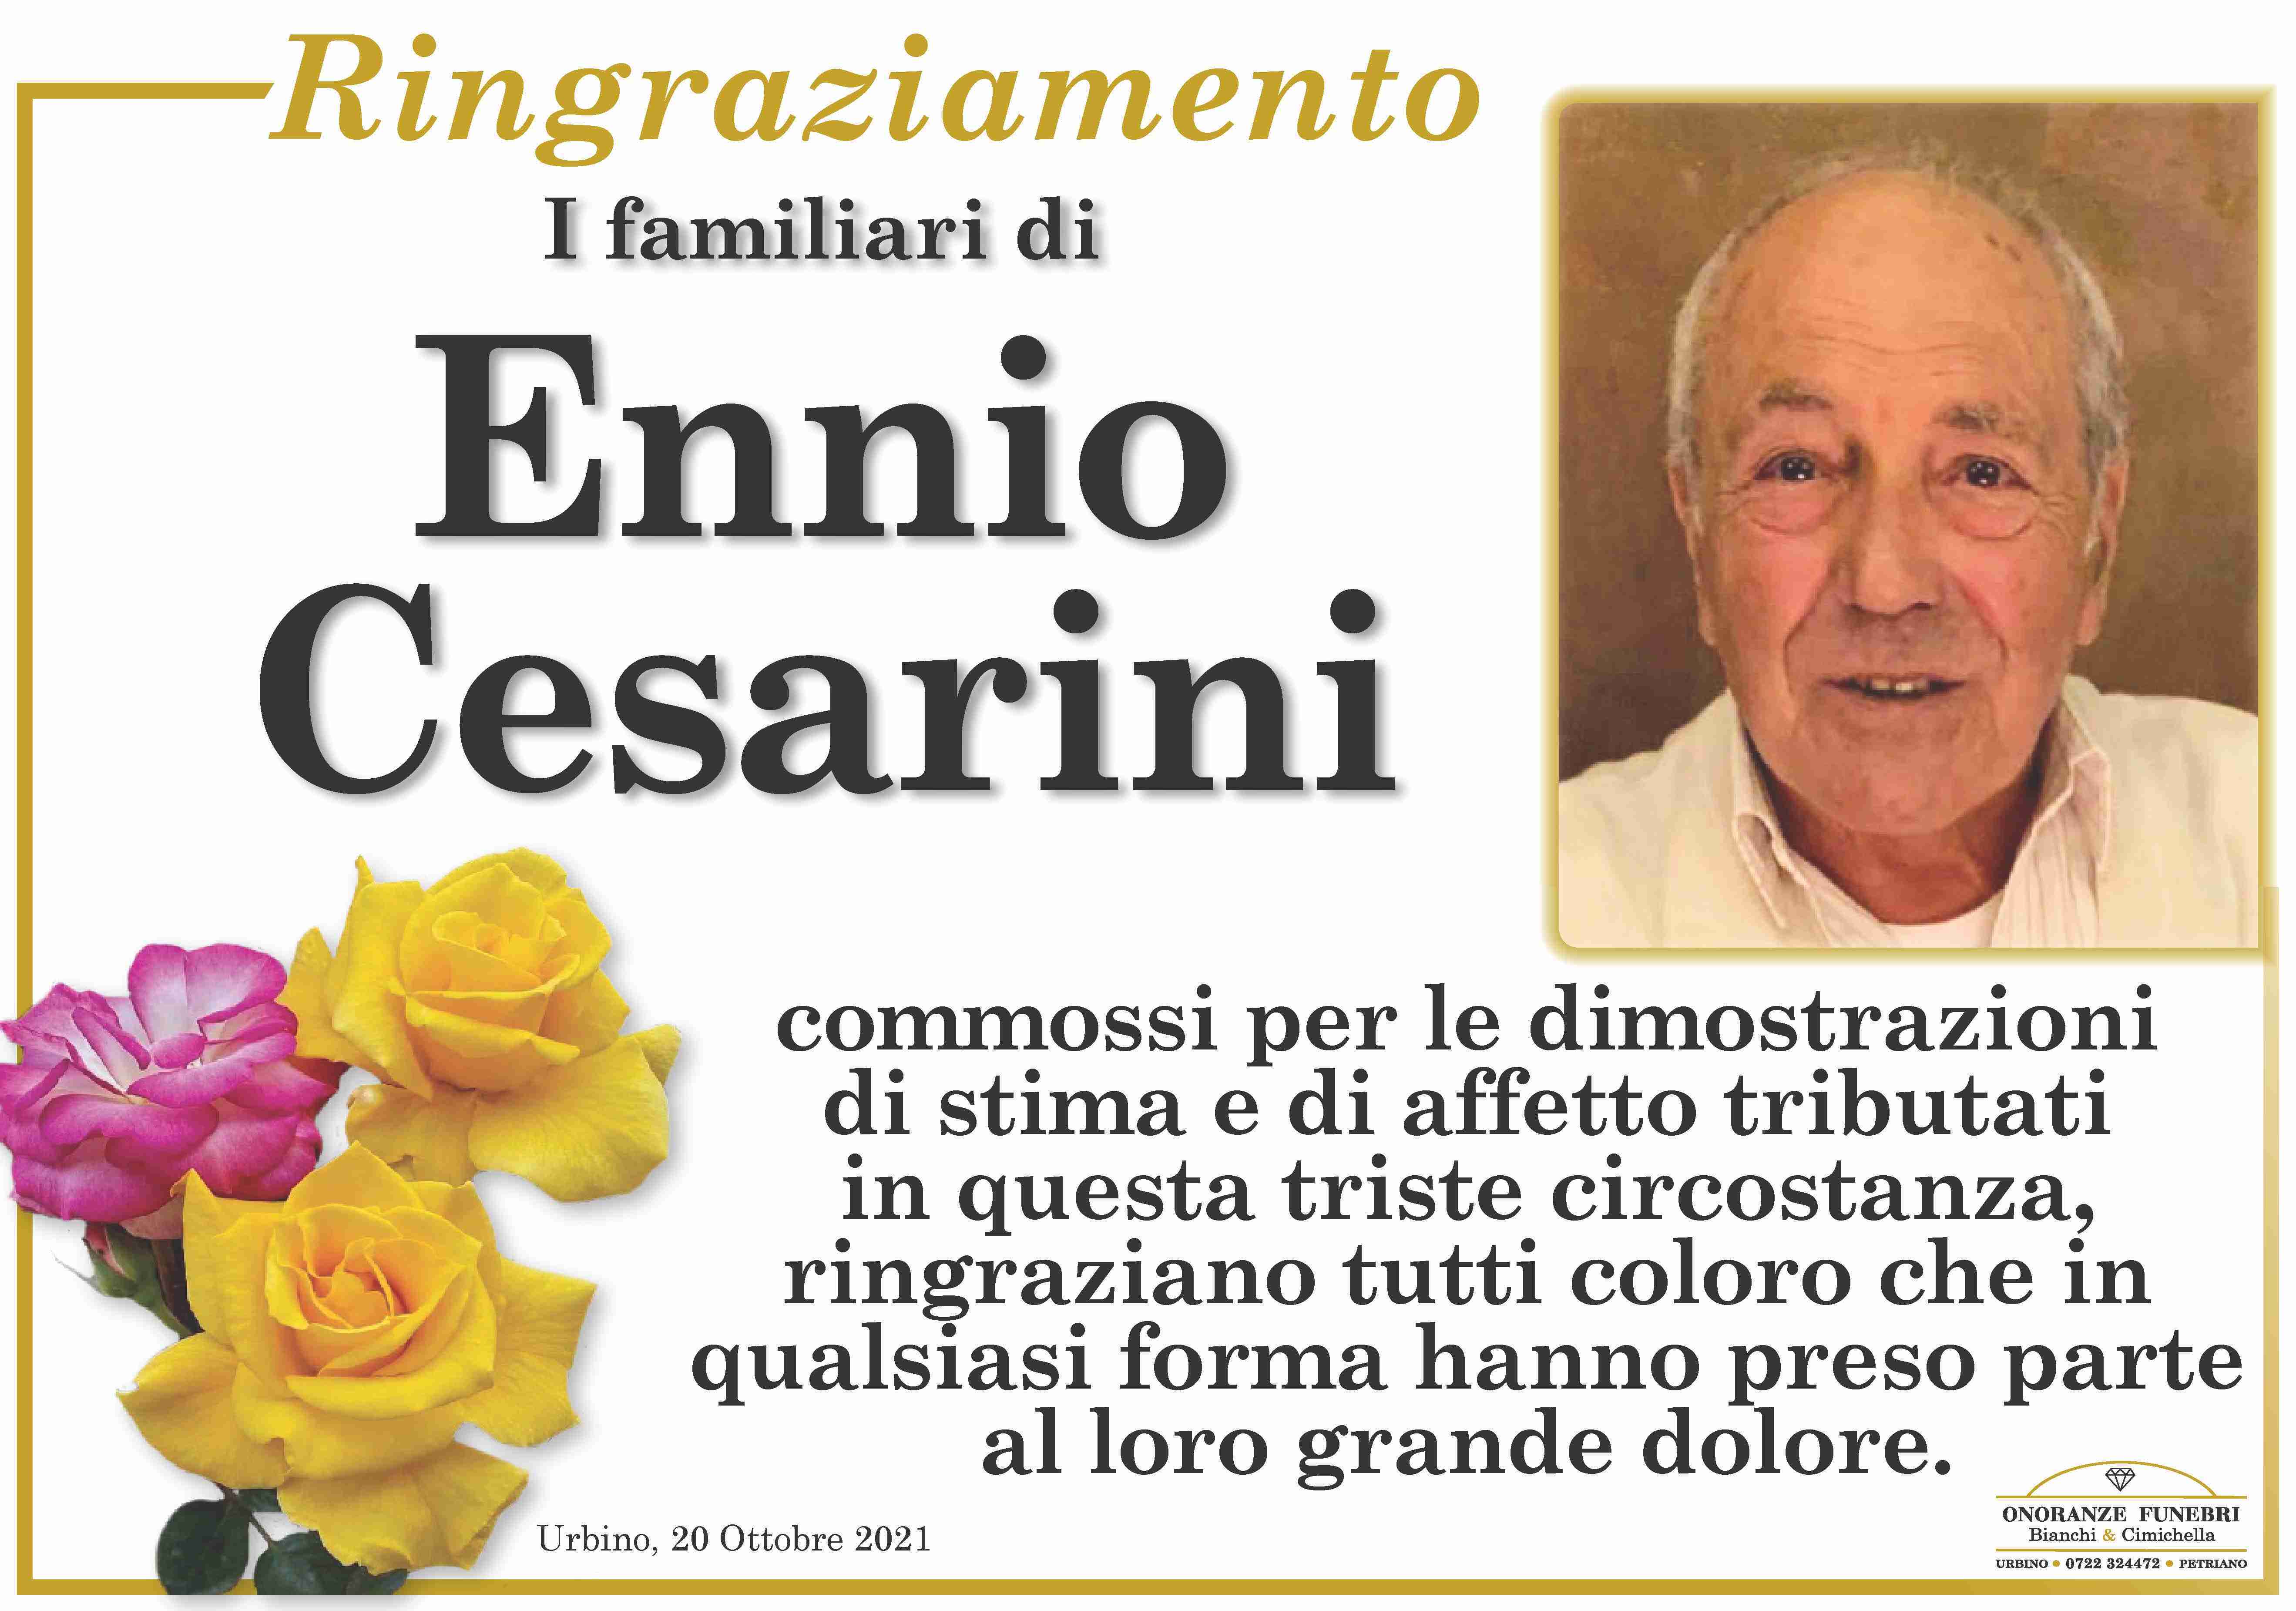 Ennio Cesarini